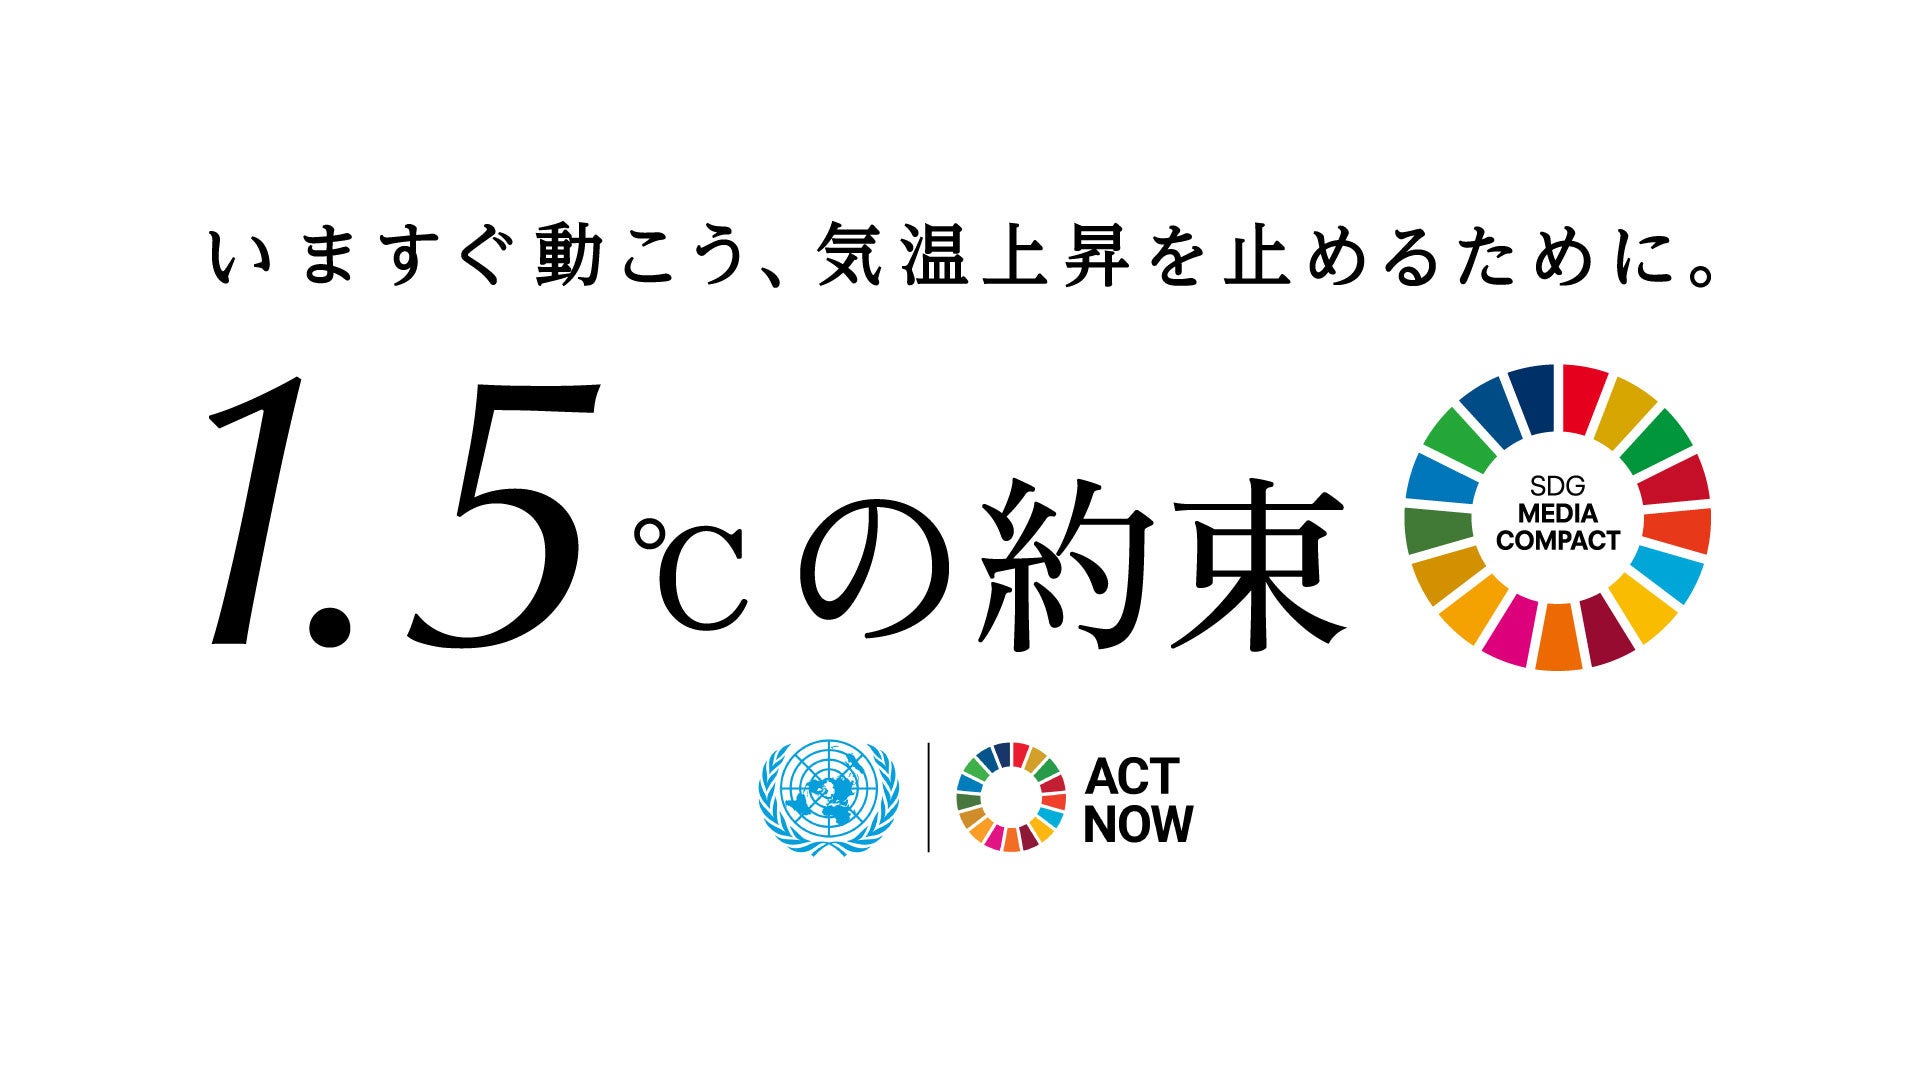 国連広報センターと日本の146メディアによる「1.5℃の約束」キャンペーン、1.5℃という具体的な基準を設けて多様なメディアが生活者に身近でできることを呼び掛けたことがインパクトにのサブ画像1